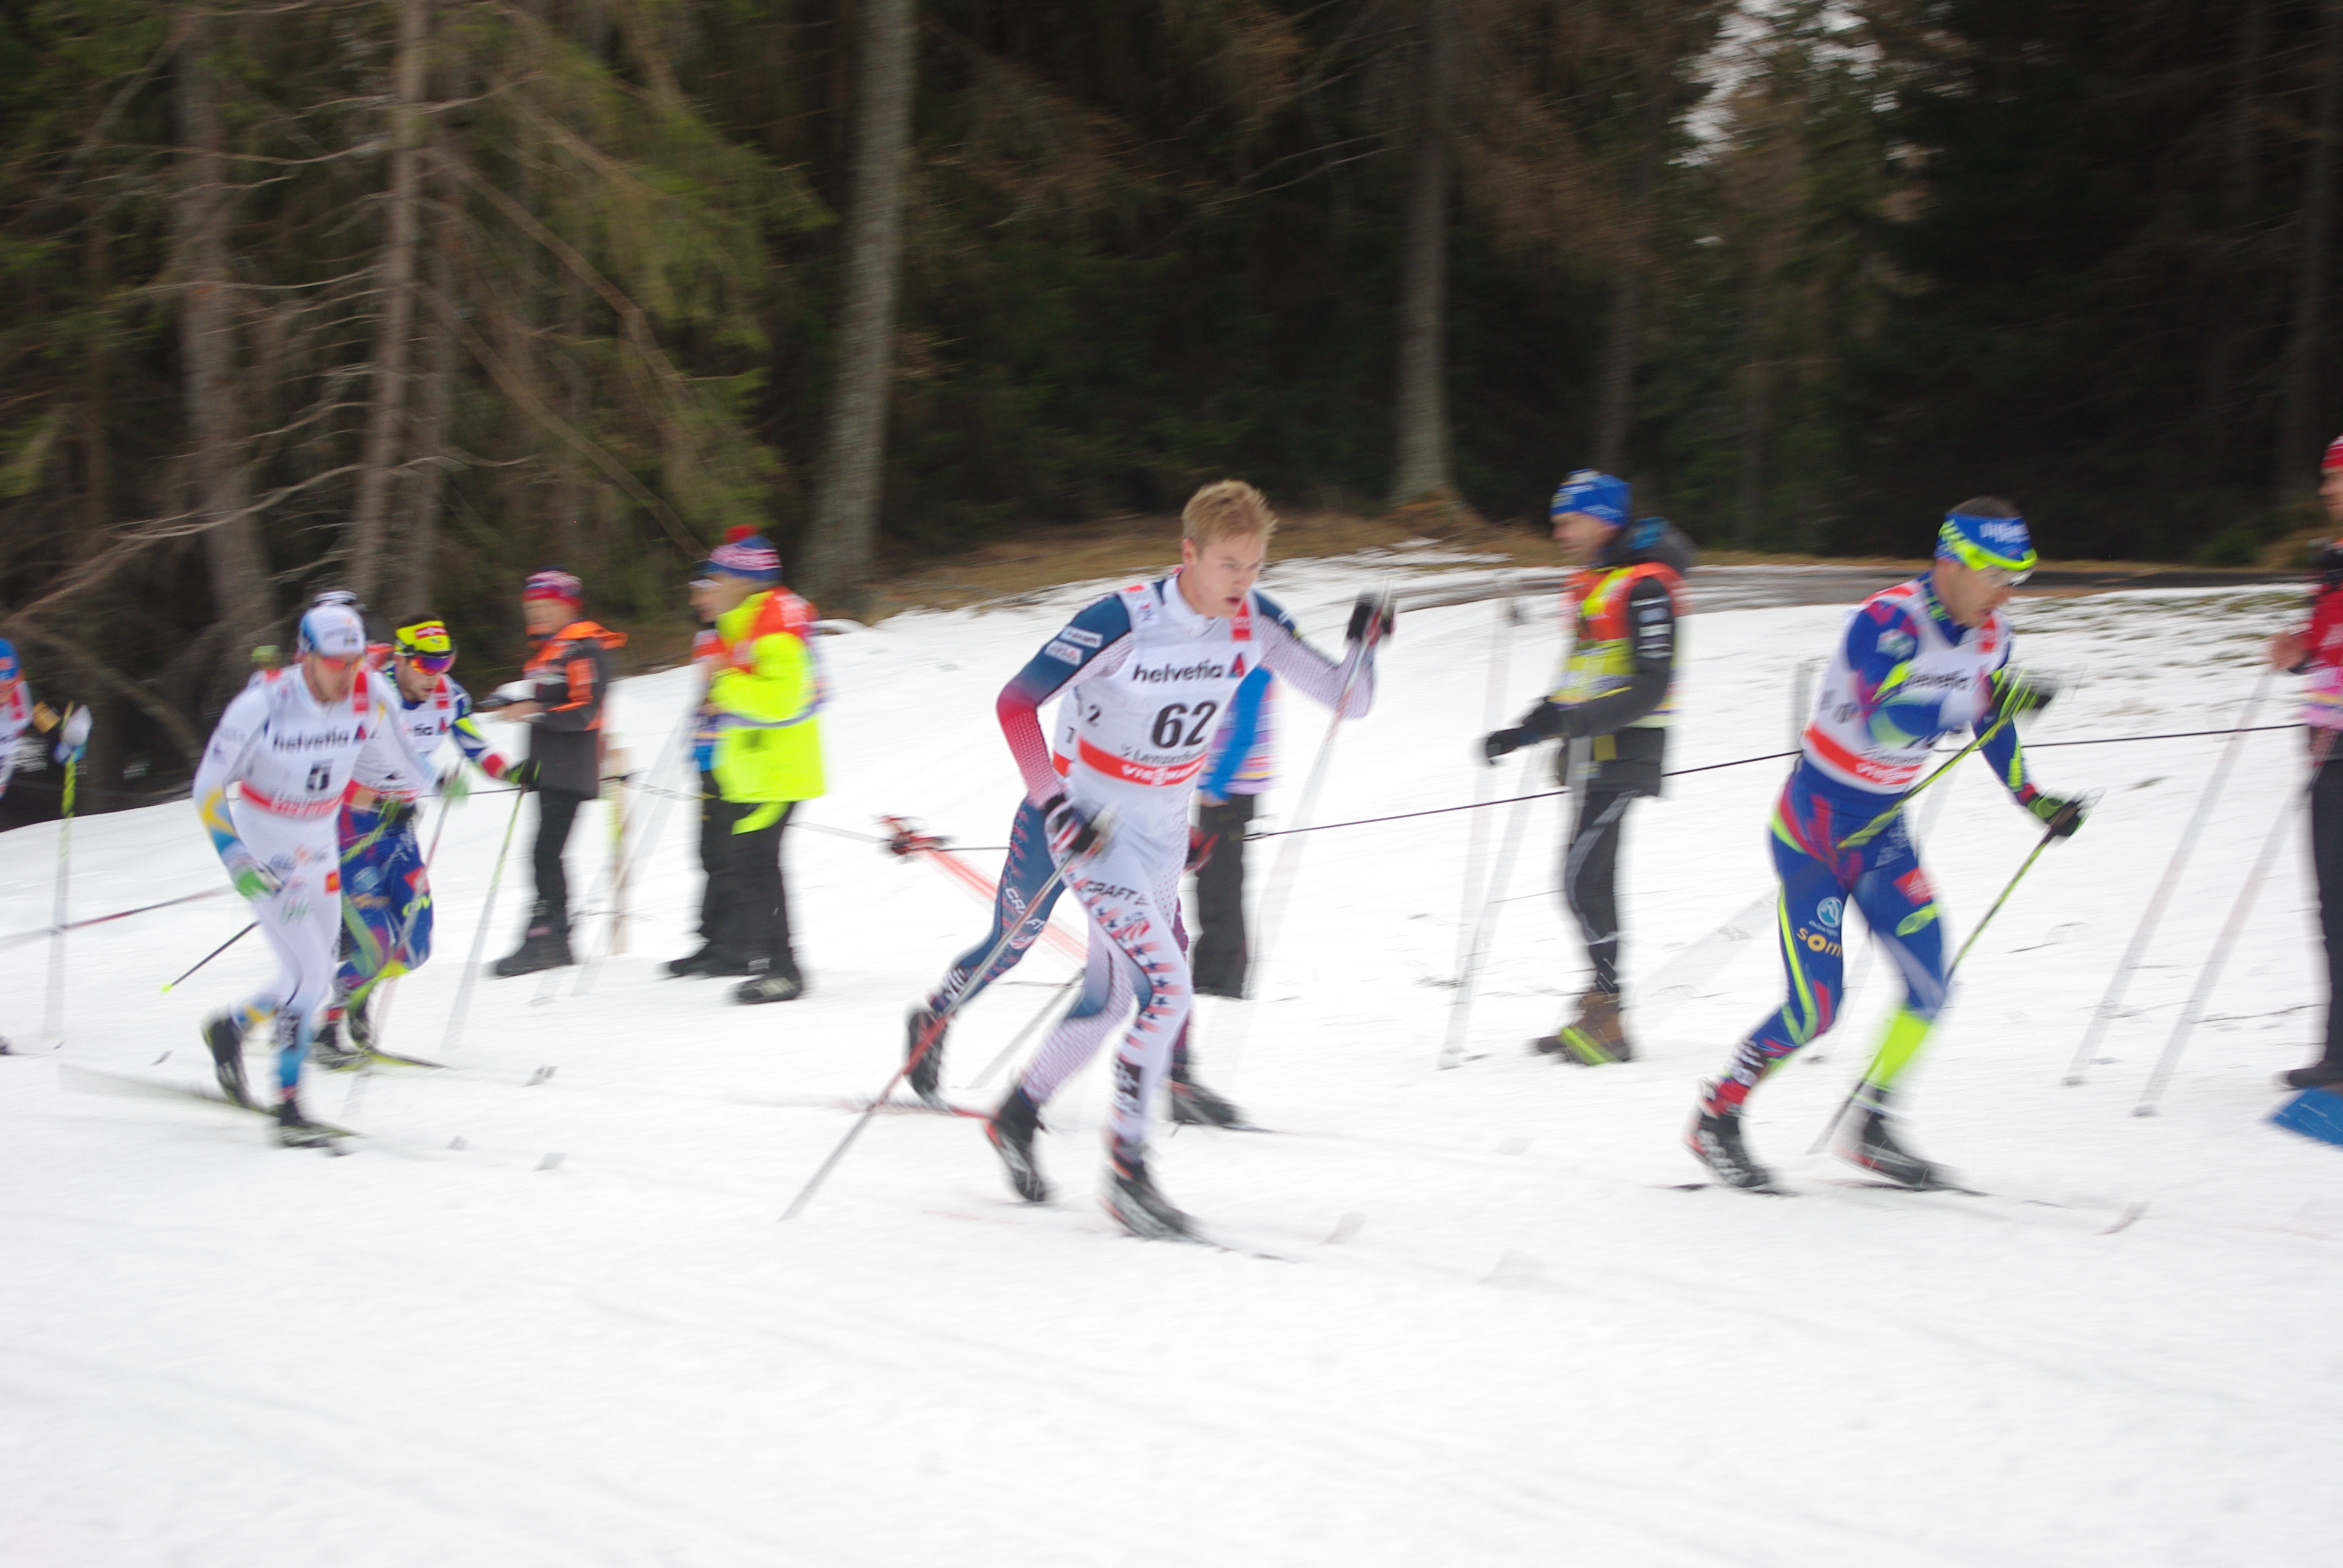 Erik Bjornsen (USA, bib 62) in the mix halfway by means of the men's 30 k in Lenzerheide, Switzerland.